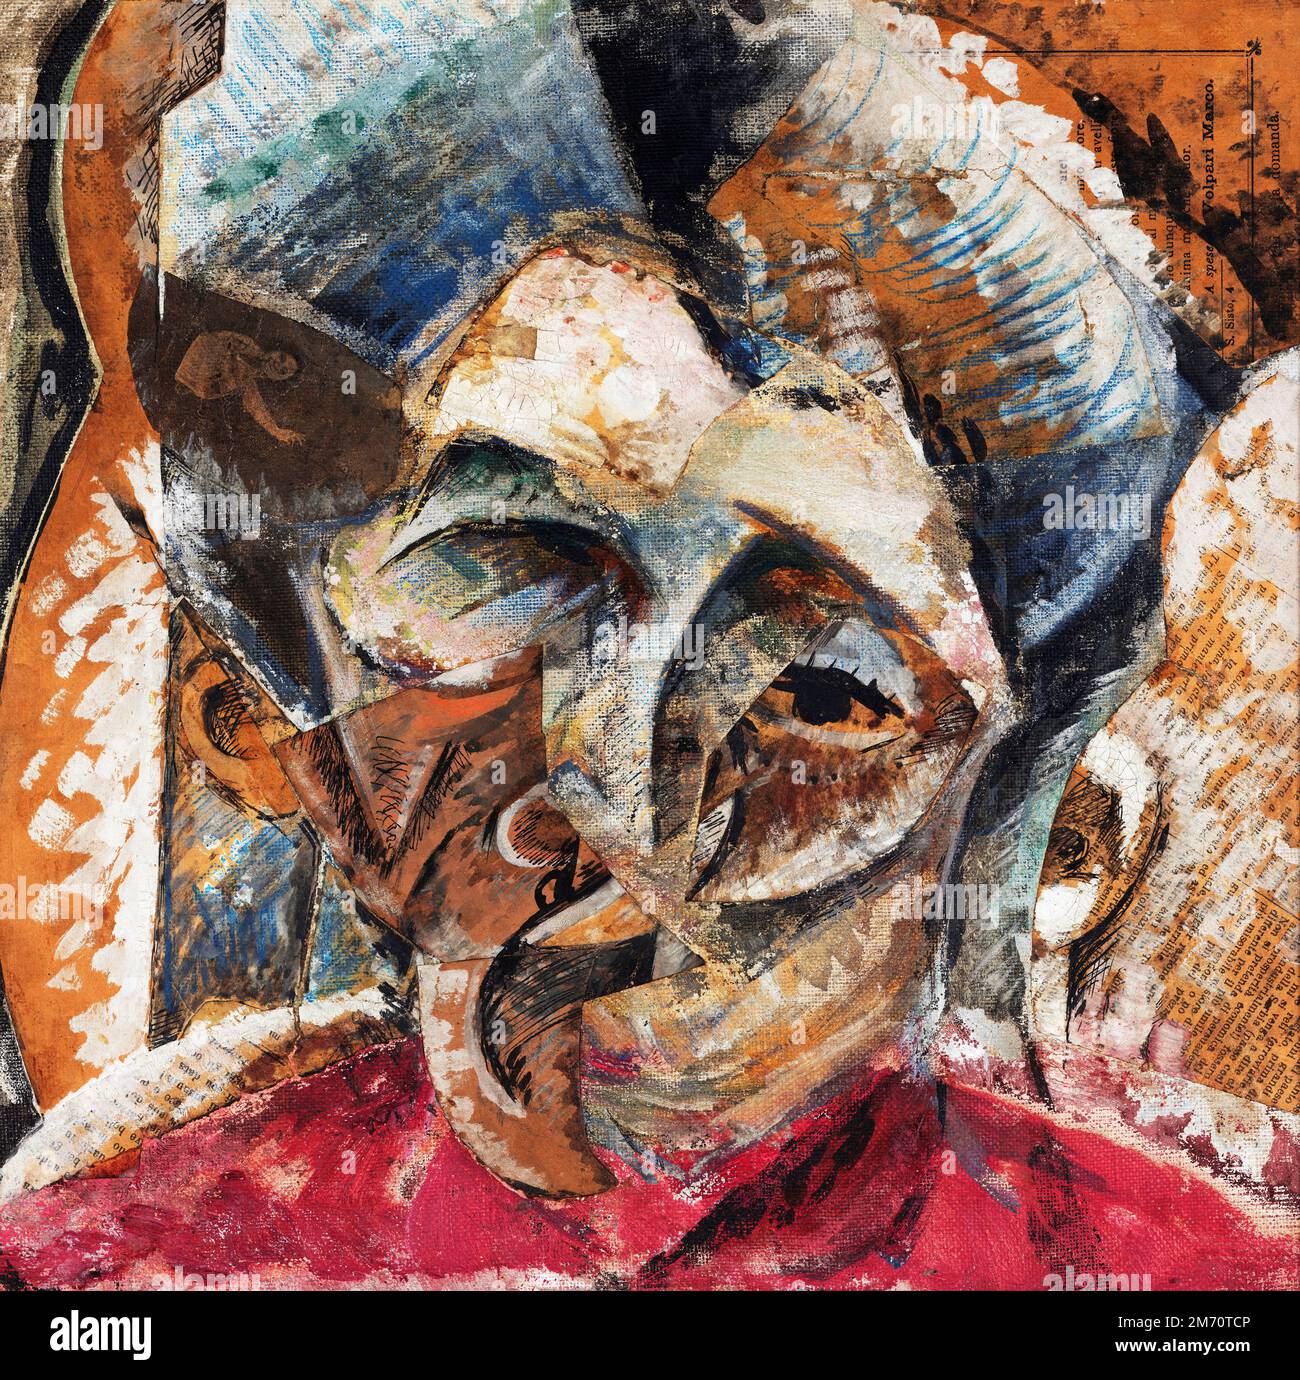 Dinamismo di una testa di donna (dynamisme de la tête d'une femme) par Umberto Boccioni (1882-1916), tempera et collage sur toile, 1914 Banque D'Images